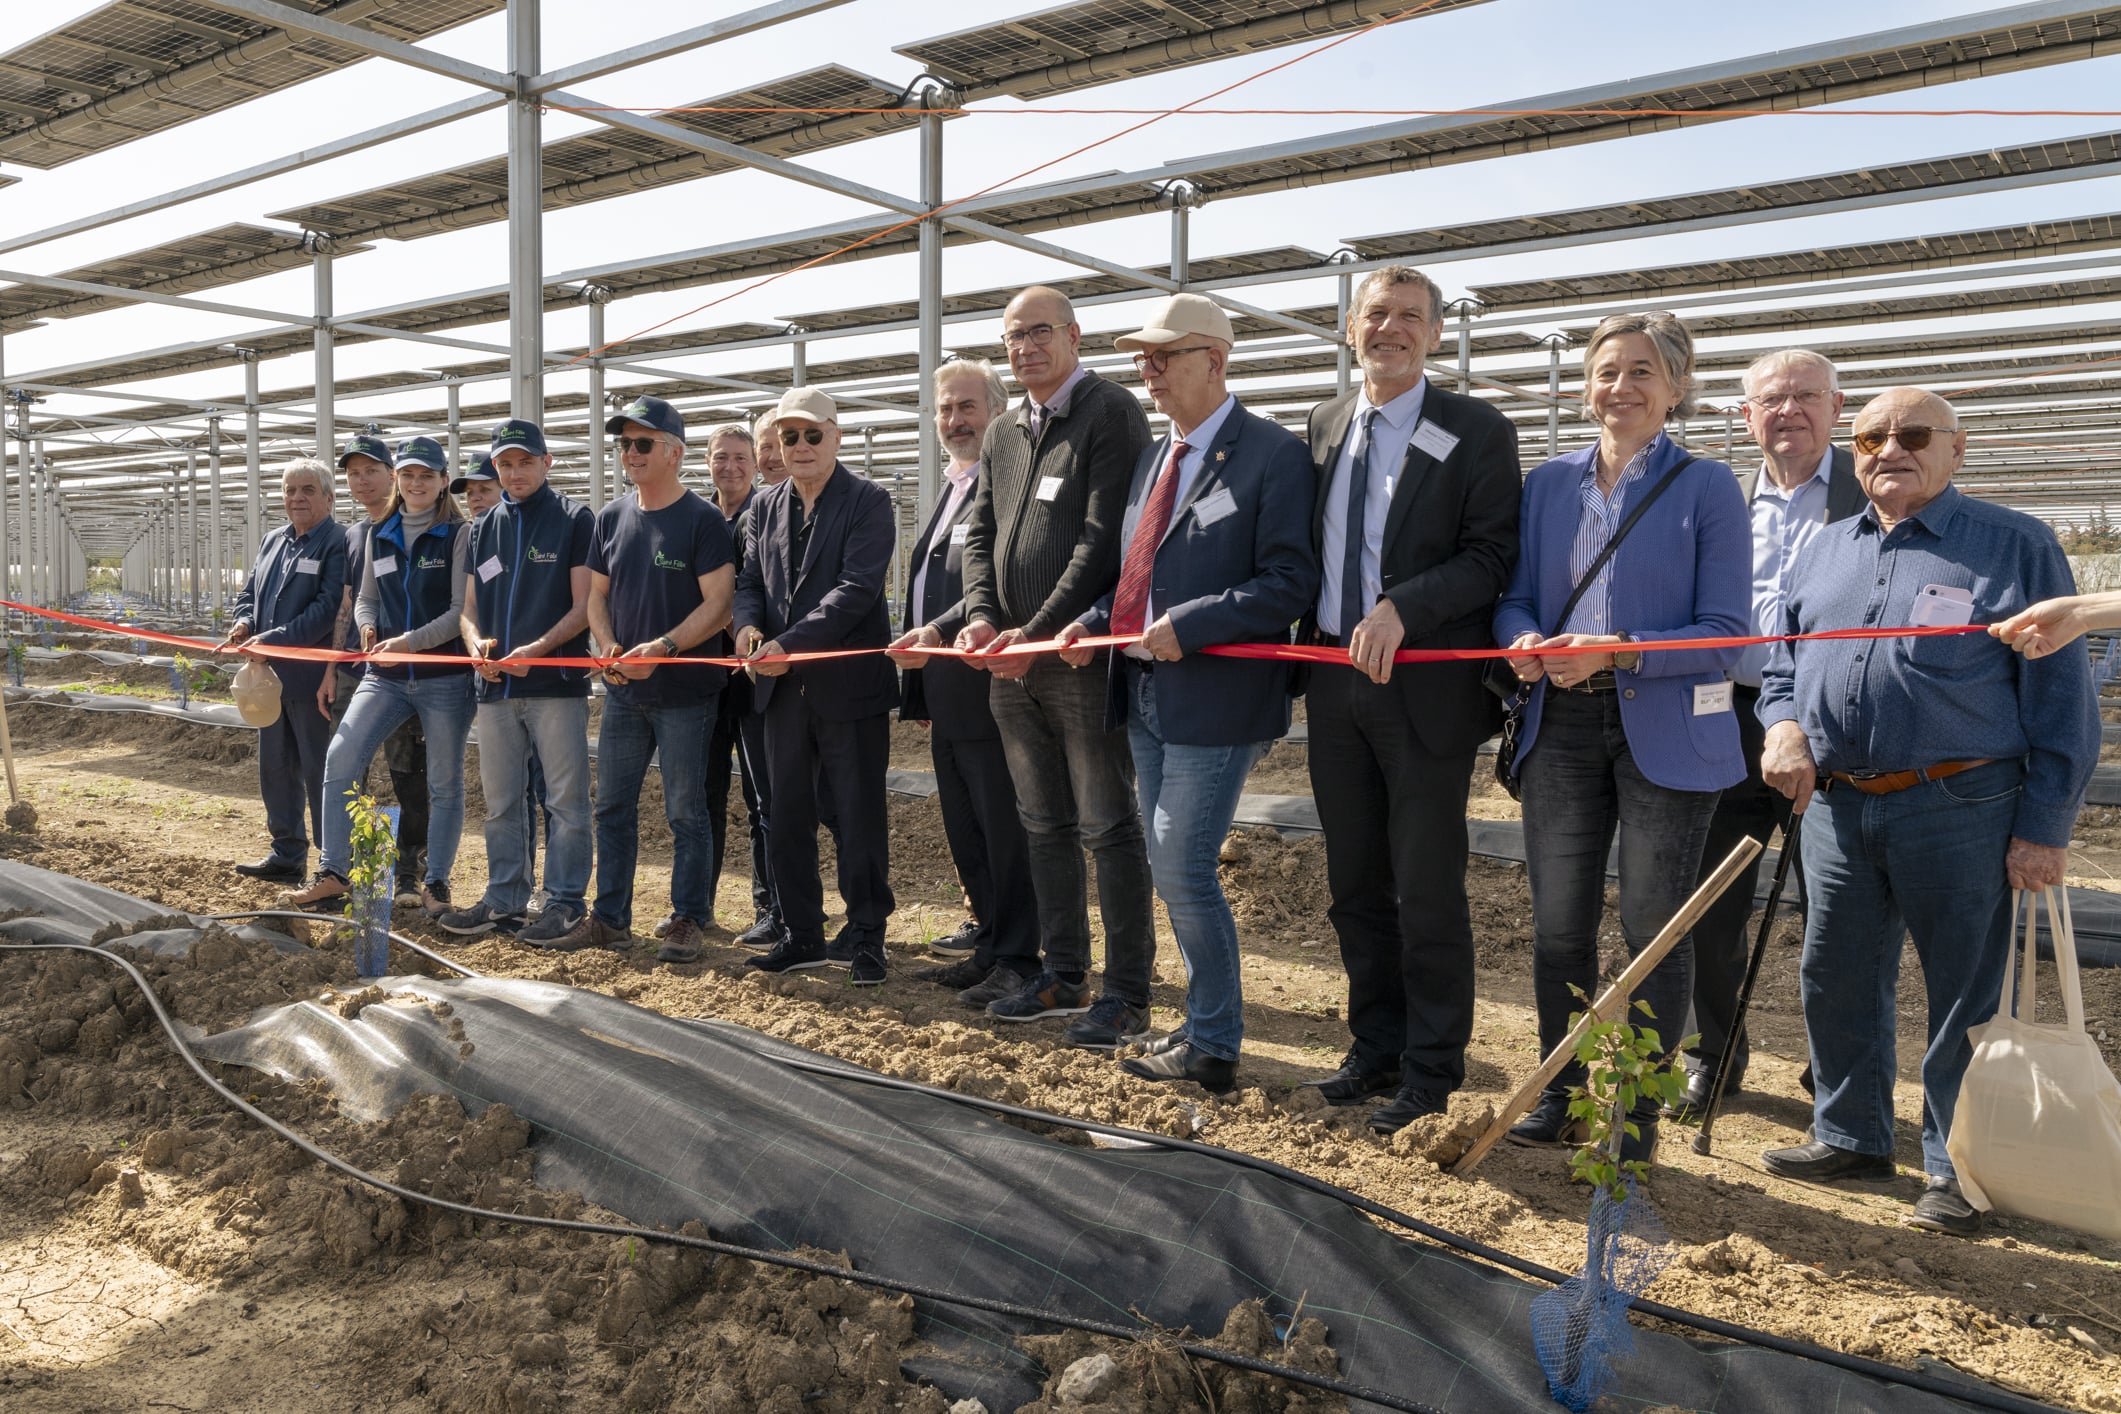 Featured image for “Sun’Agri inaugure dans le Vaucluse le premier dispositif agrivoltaïque dynamique mondial sur cultures d’abricots bio”